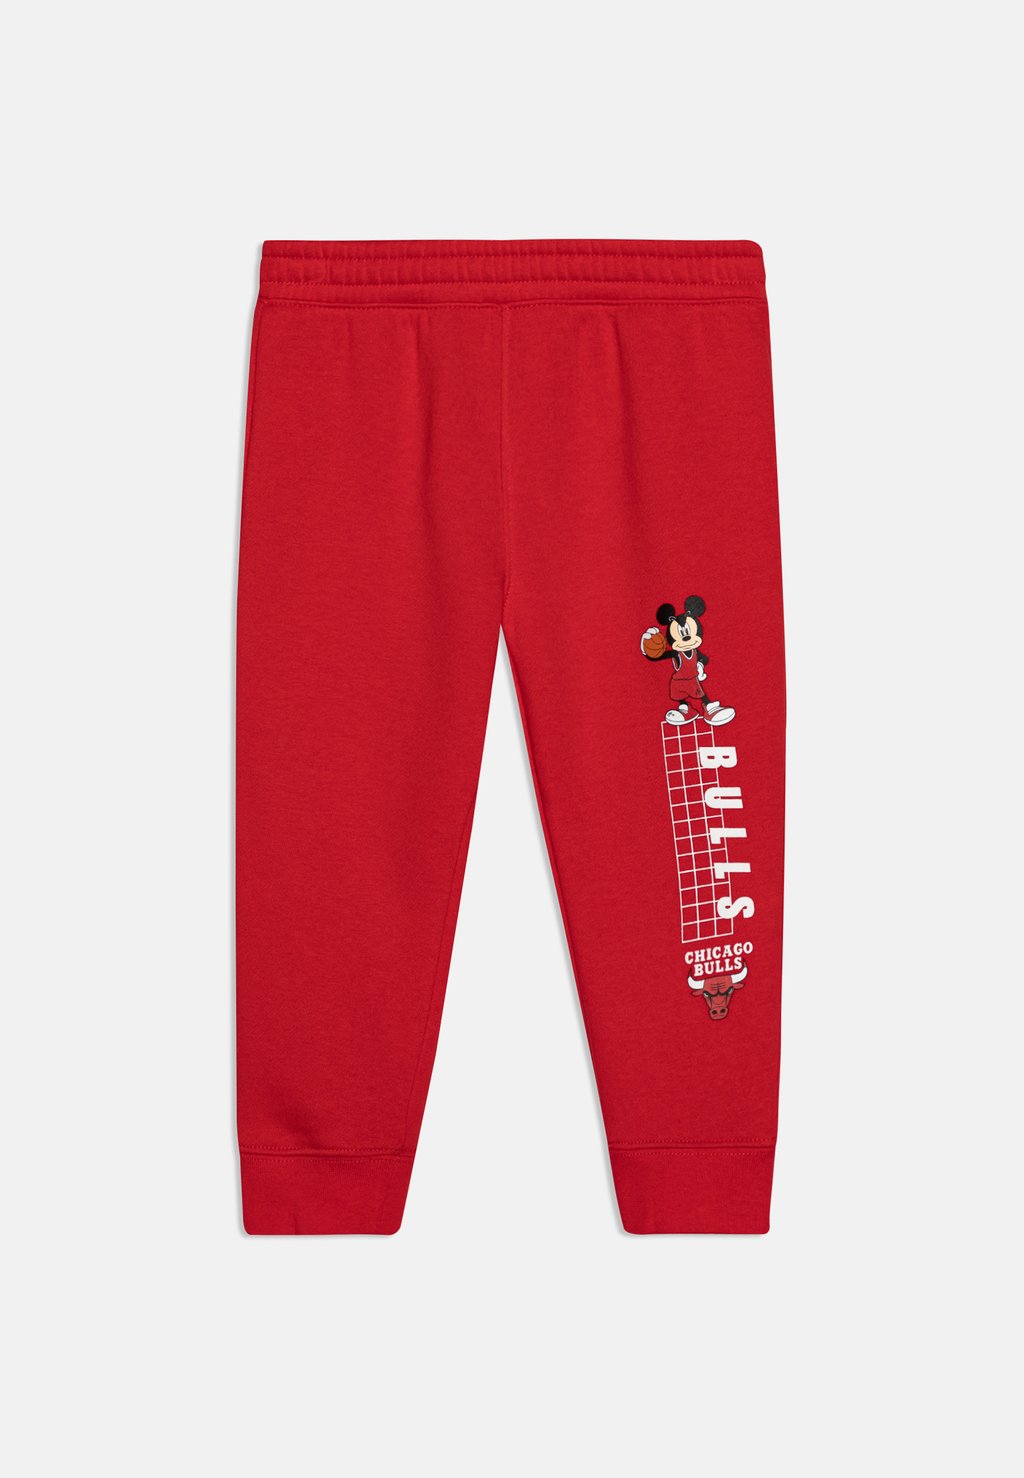 Спортивные брюки Nba Chicago Bulls Disney Unisex Outerstuff, цвет university red